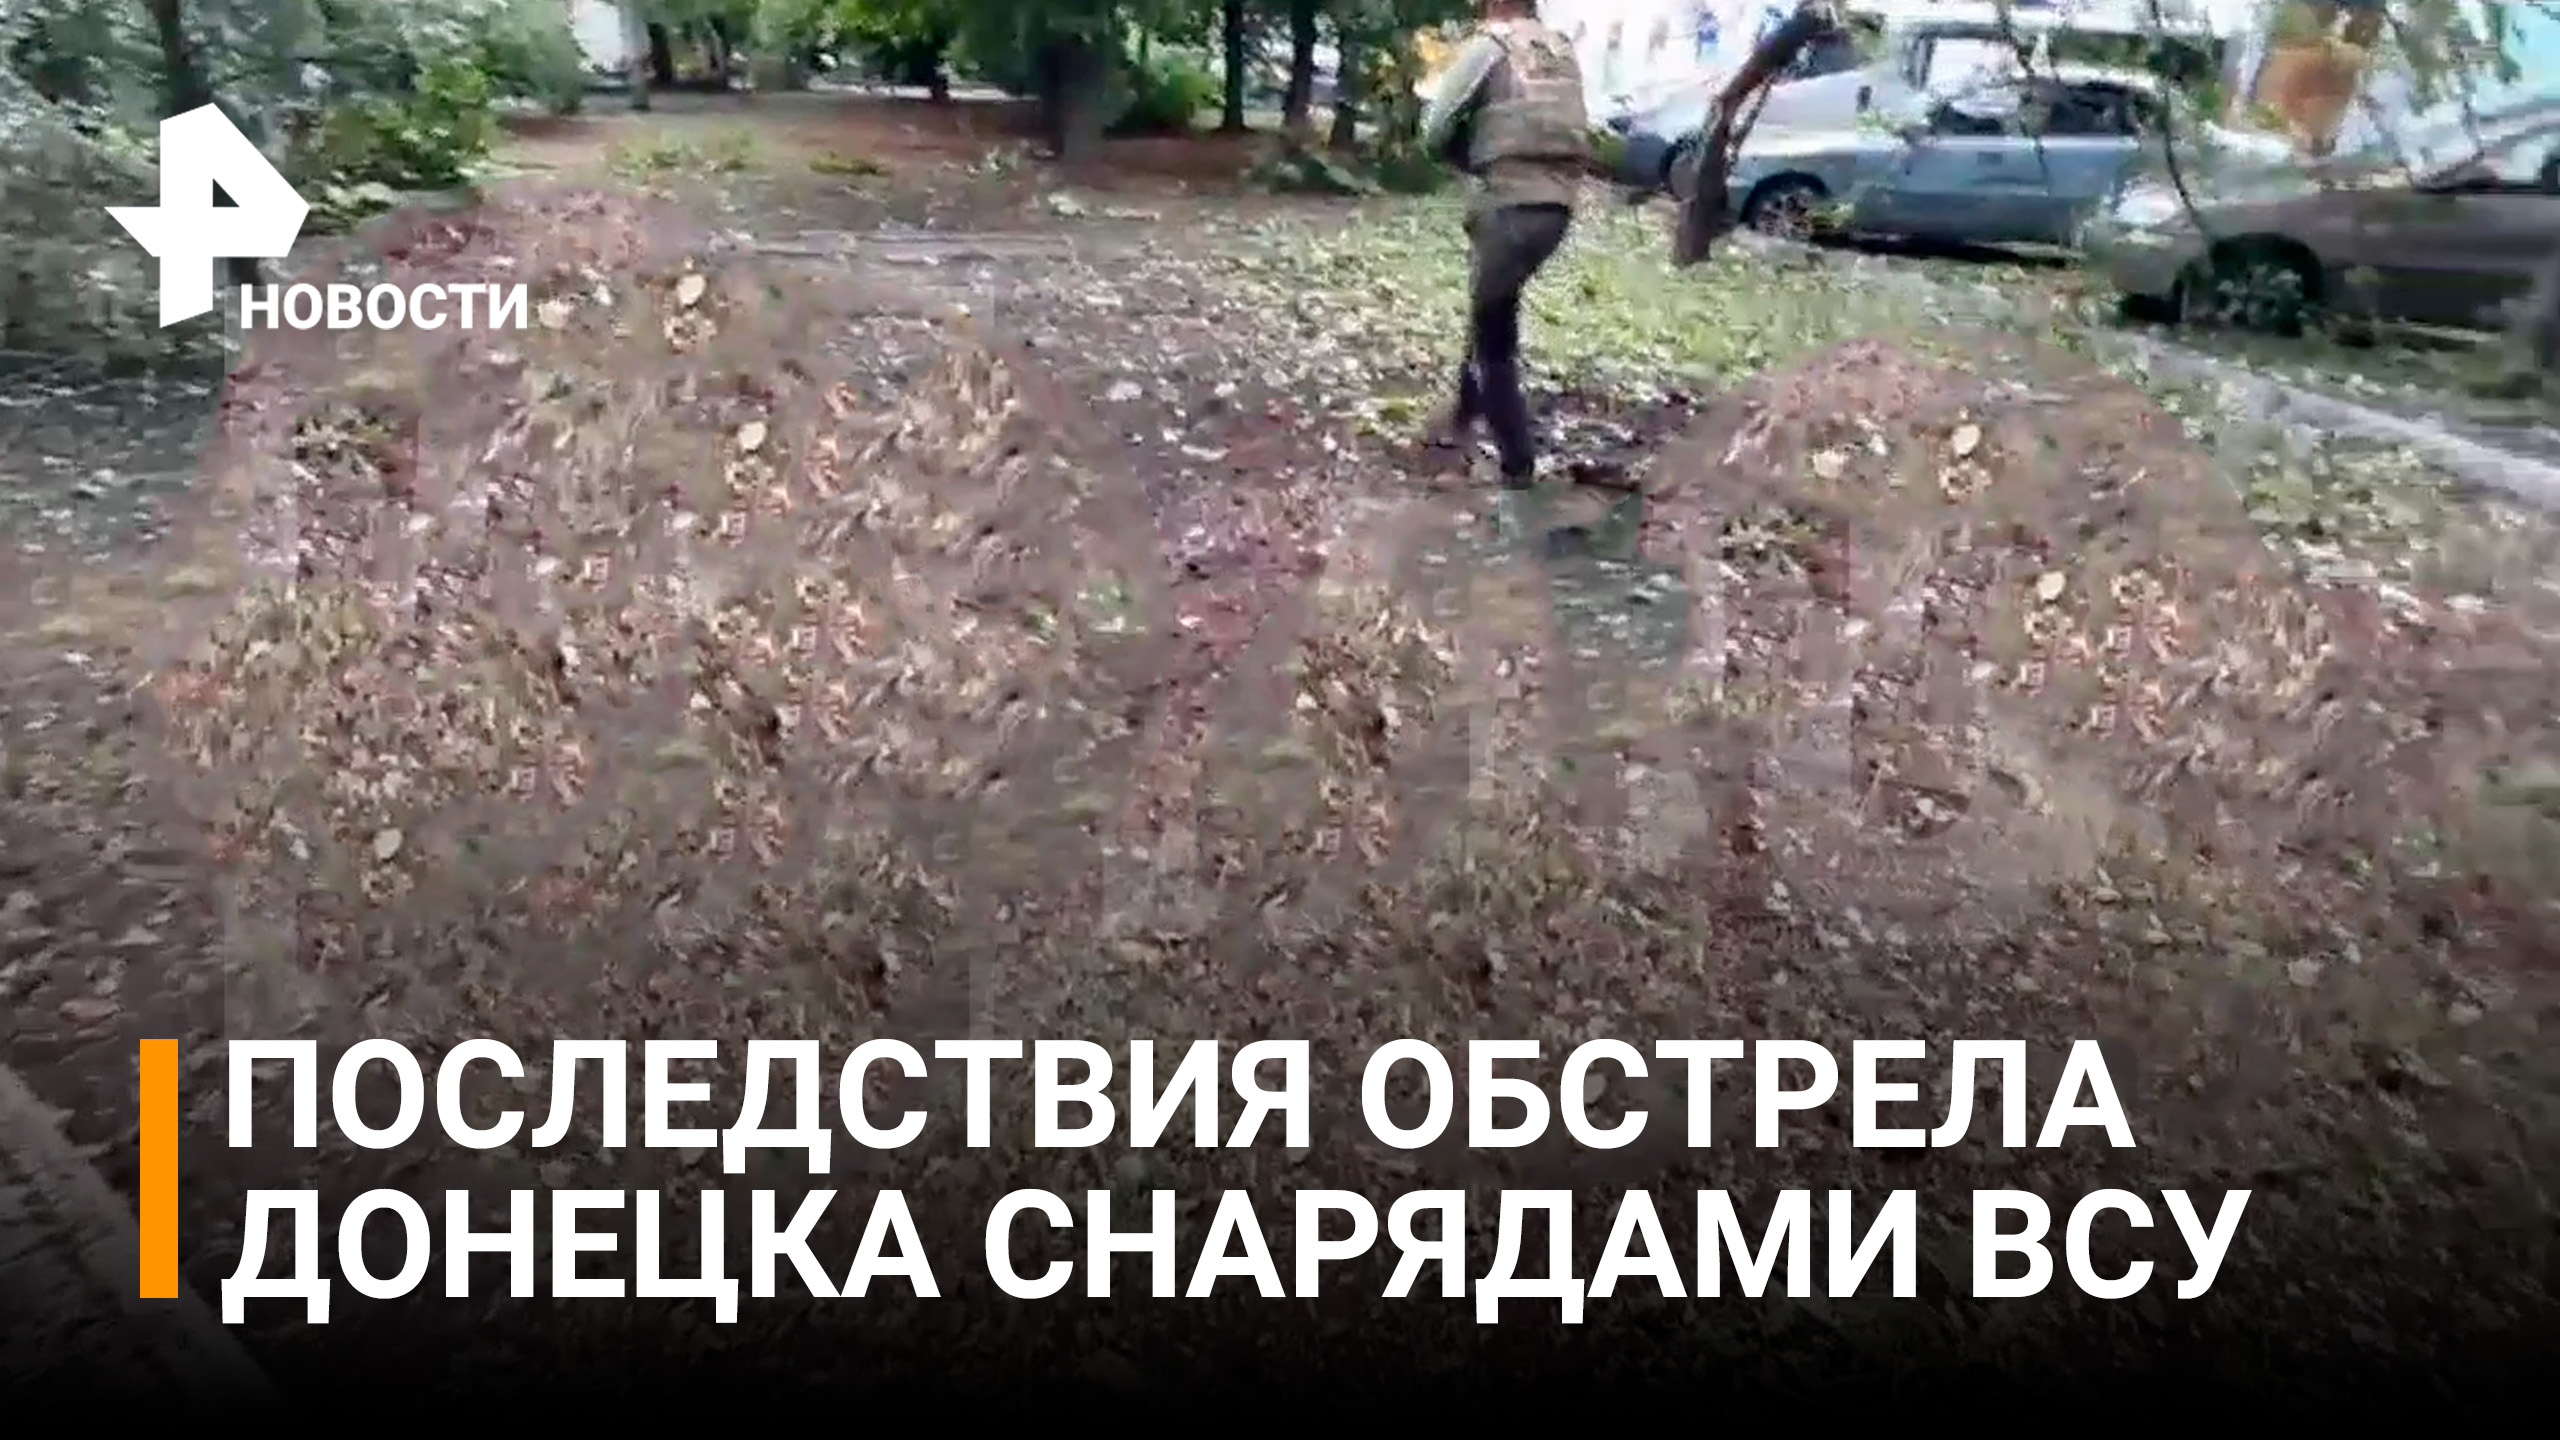 На месте циничного удара ВСУ работают медики. Националисты обстреляли центр Донецка / РЕН Новости